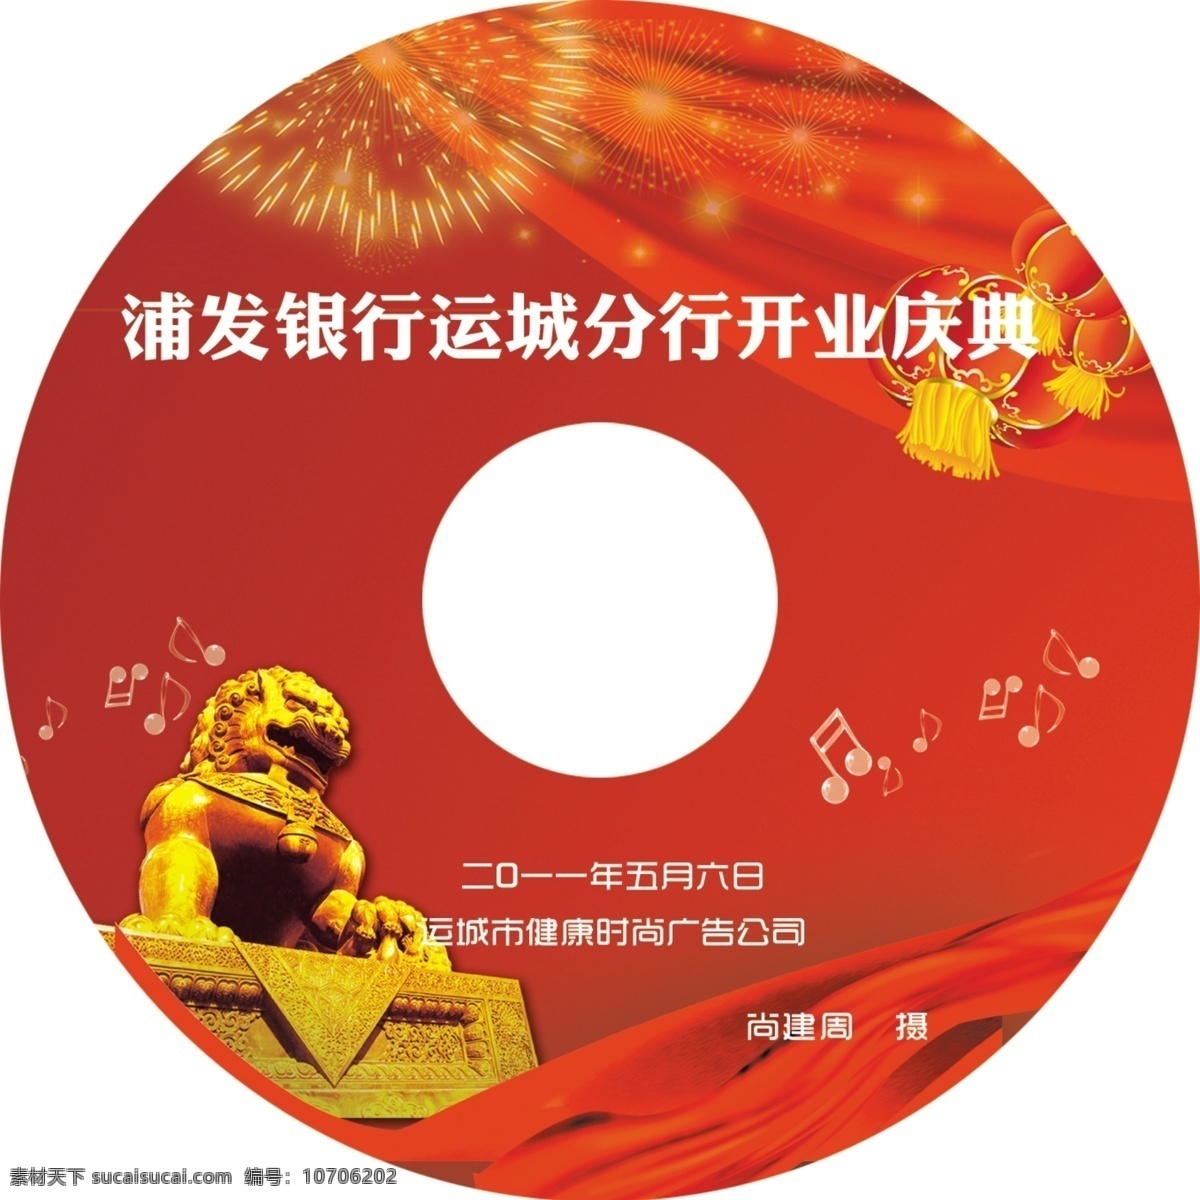 浦发银行 开业 光盘 光盘设计 红丝绸 红灯笼 音乐符号 石狮子 烟花 运城 分行 包装设计 广告设计模板 源文件